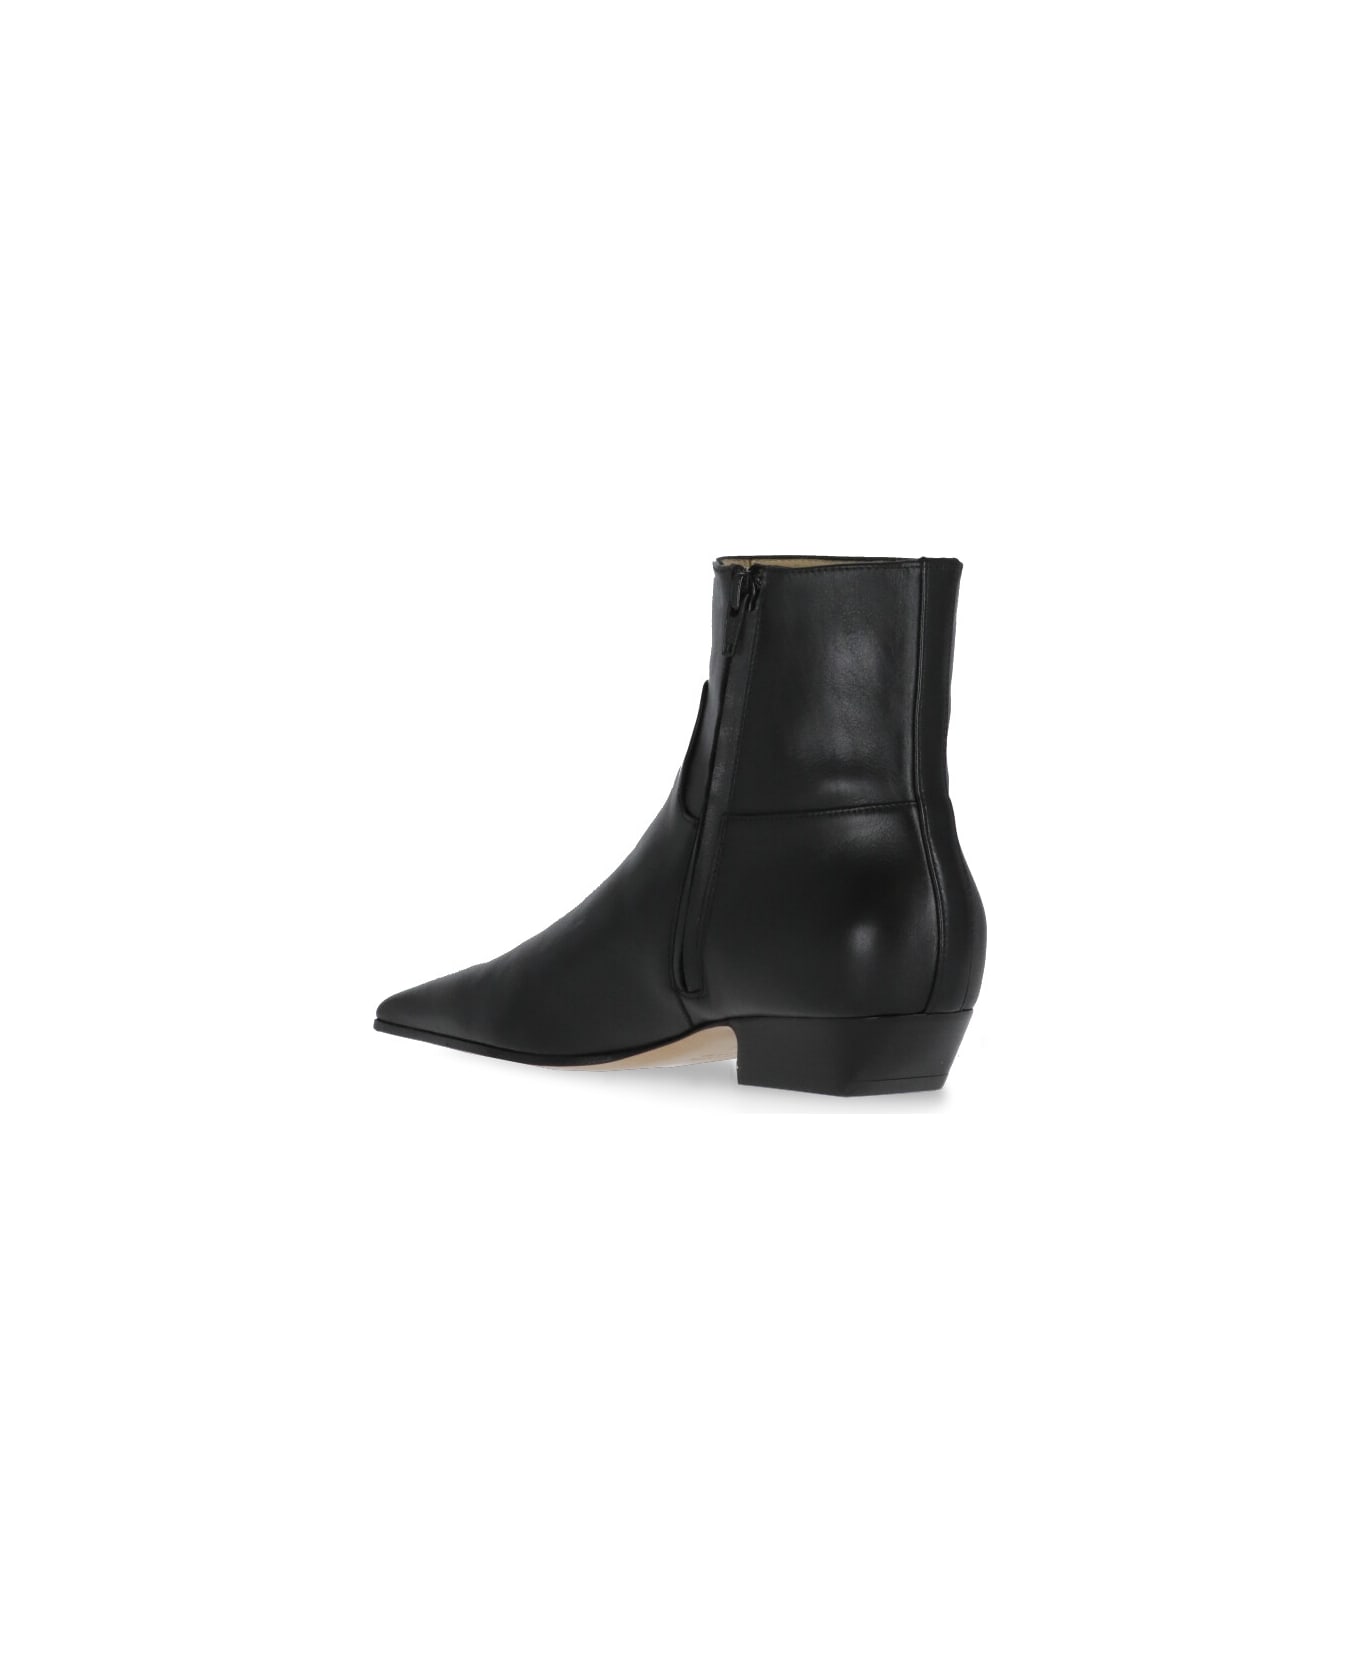 Khaite Black Leather Ankle Boots - Black